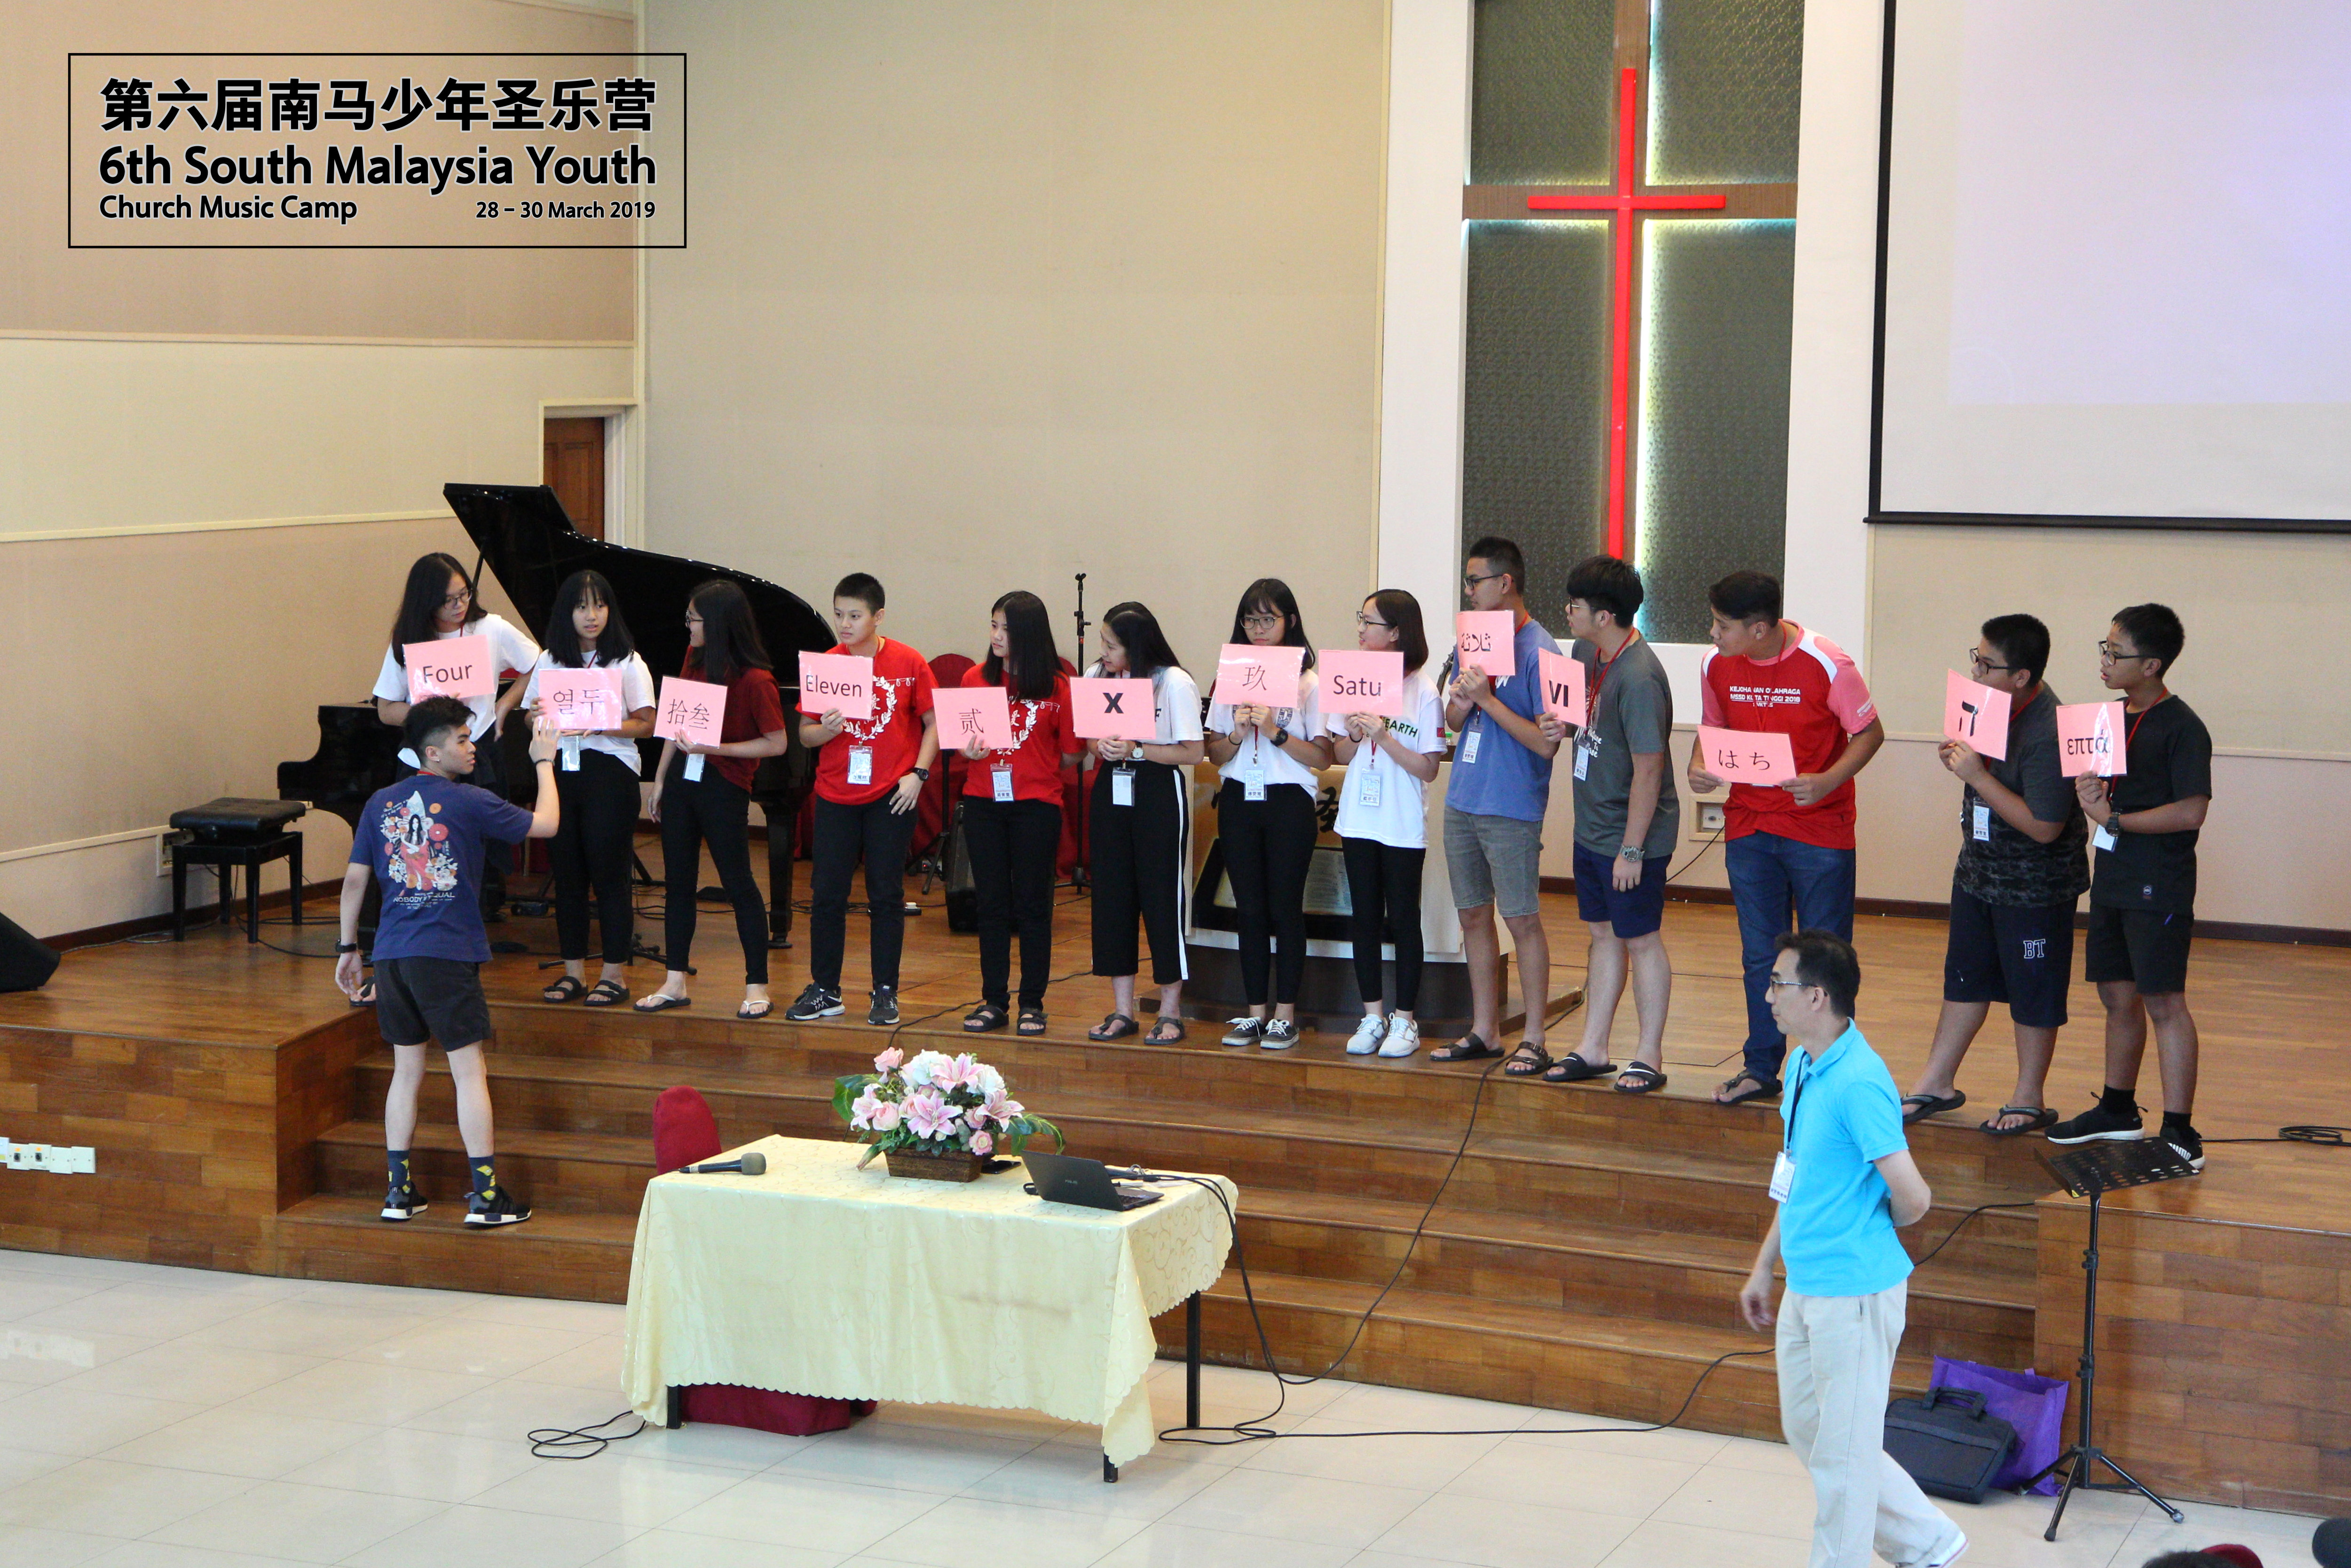 马来西亚 第六届南马少年圣乐营 6th South Malaysia Youth Church Music Camp B01-018